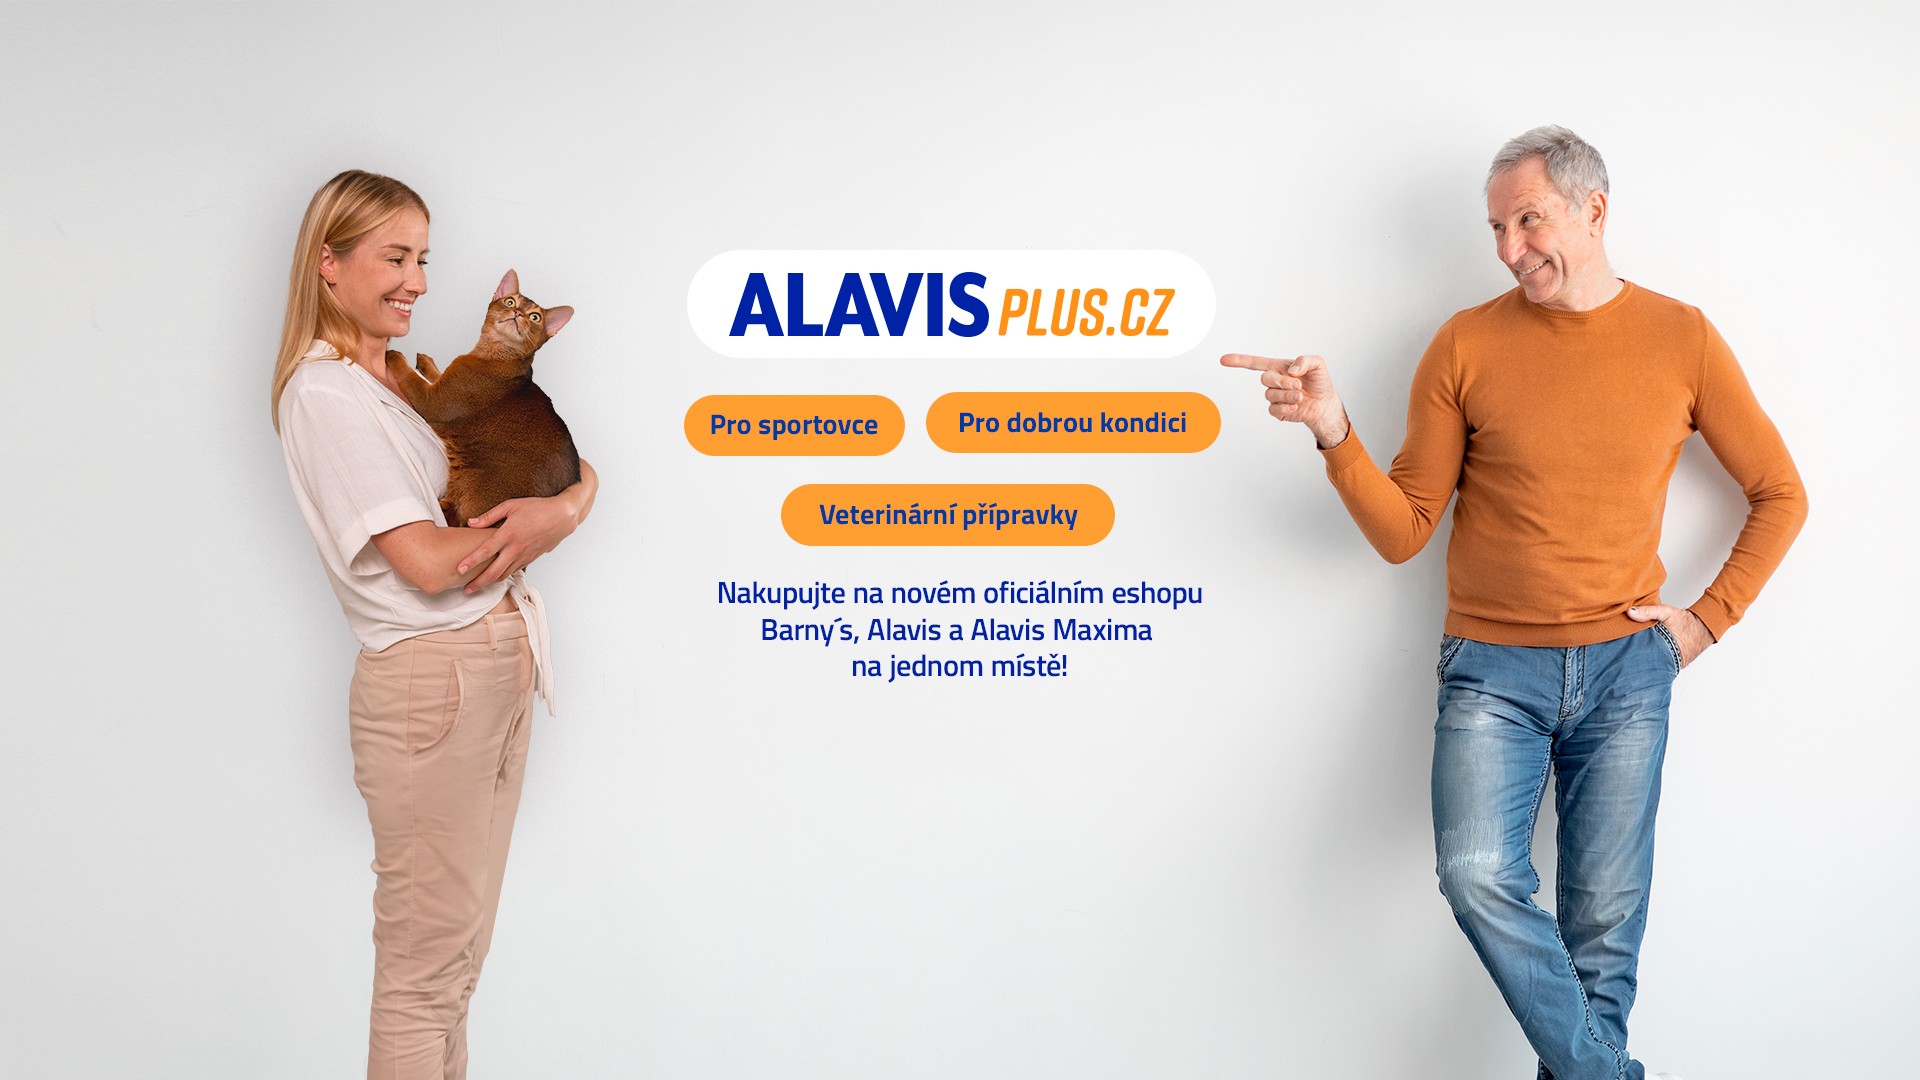 alavis-plus.cz